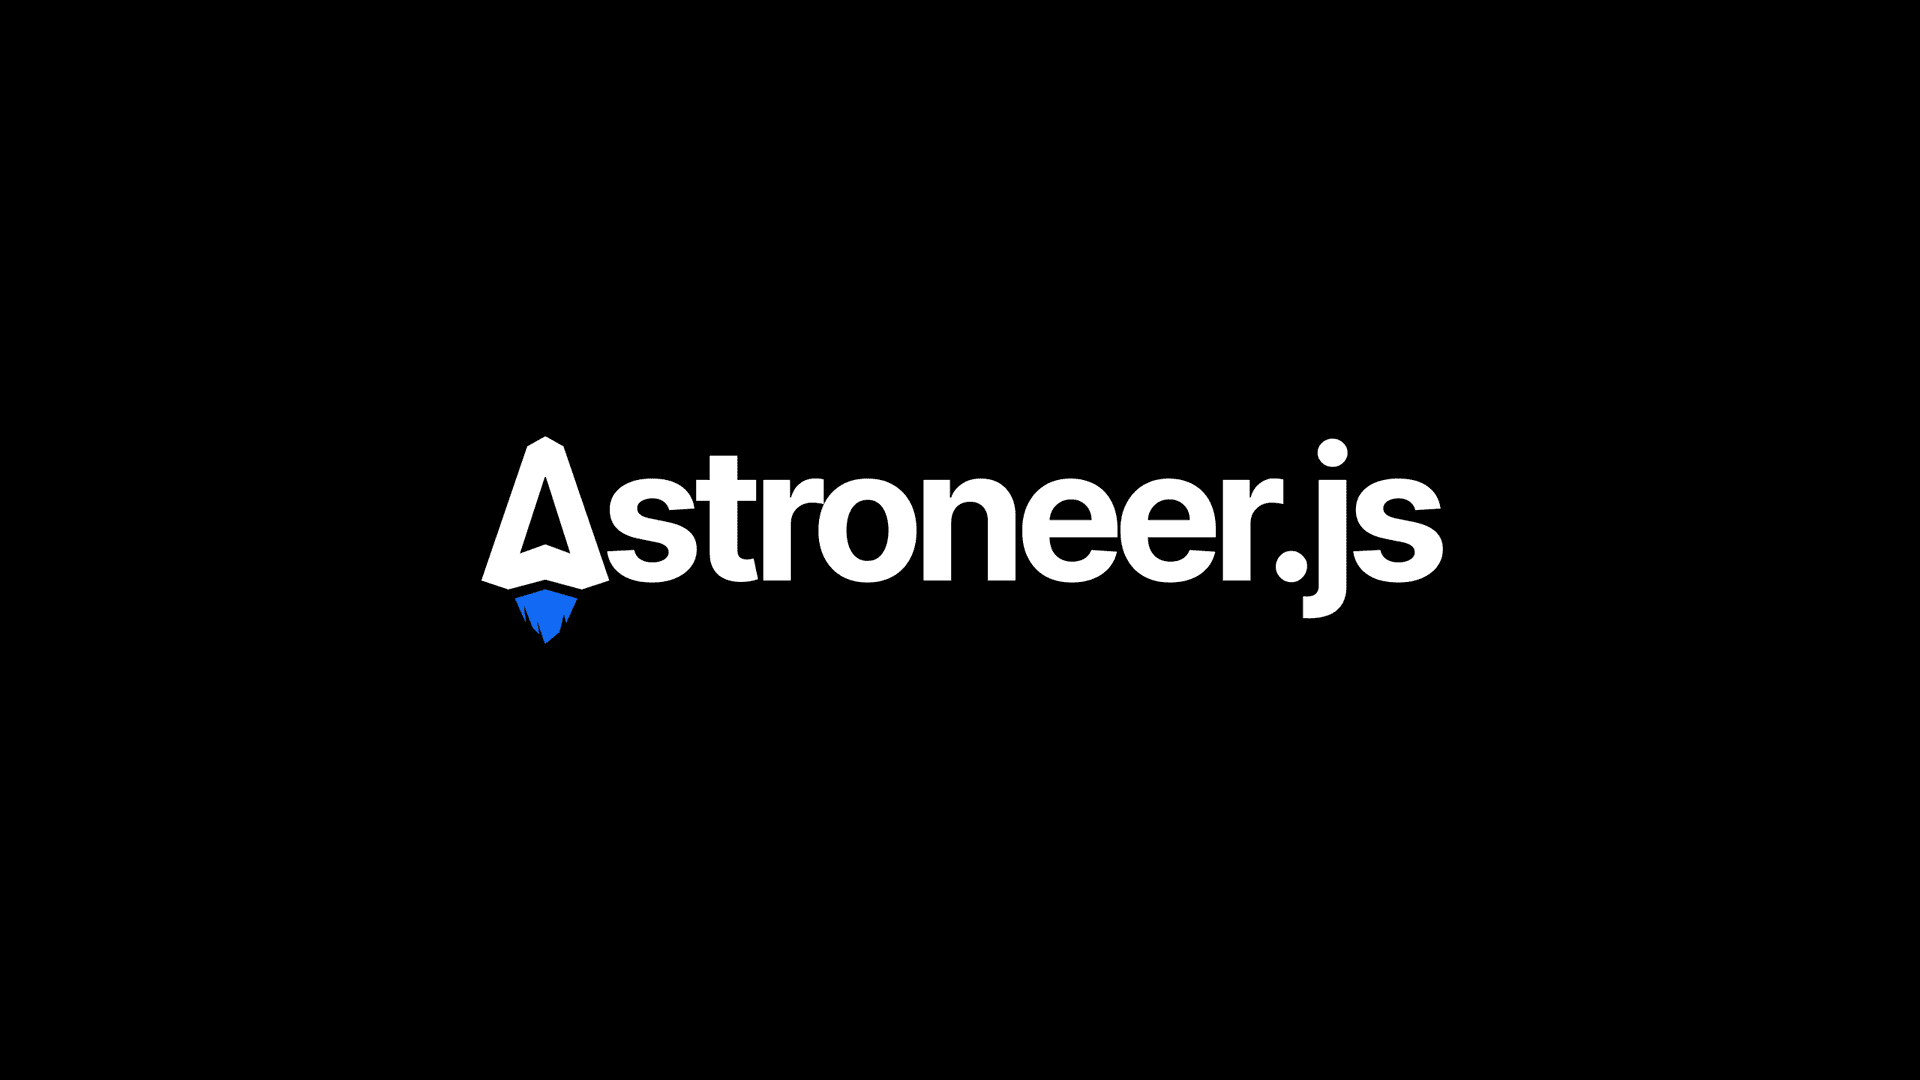 Astroneer.js